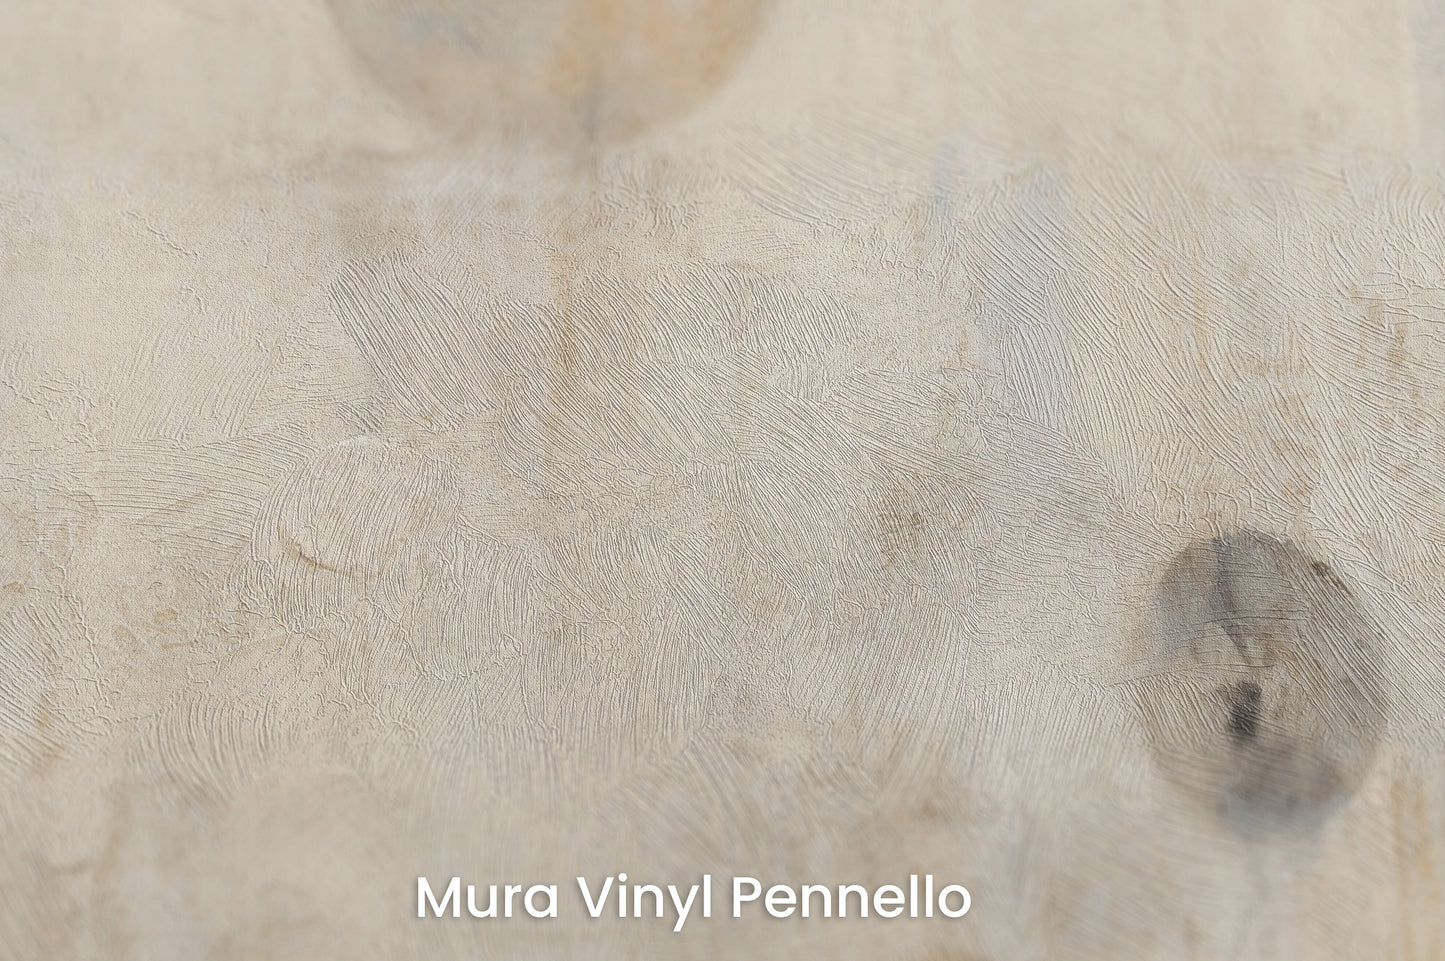 Zbliżenie na artystyczną fototapetę o nazwie WHISPERING ORBITAL SHADOWS na podłożu Mura Vinyl Pennello - faktura pociągnięć pędzla malarskiego.